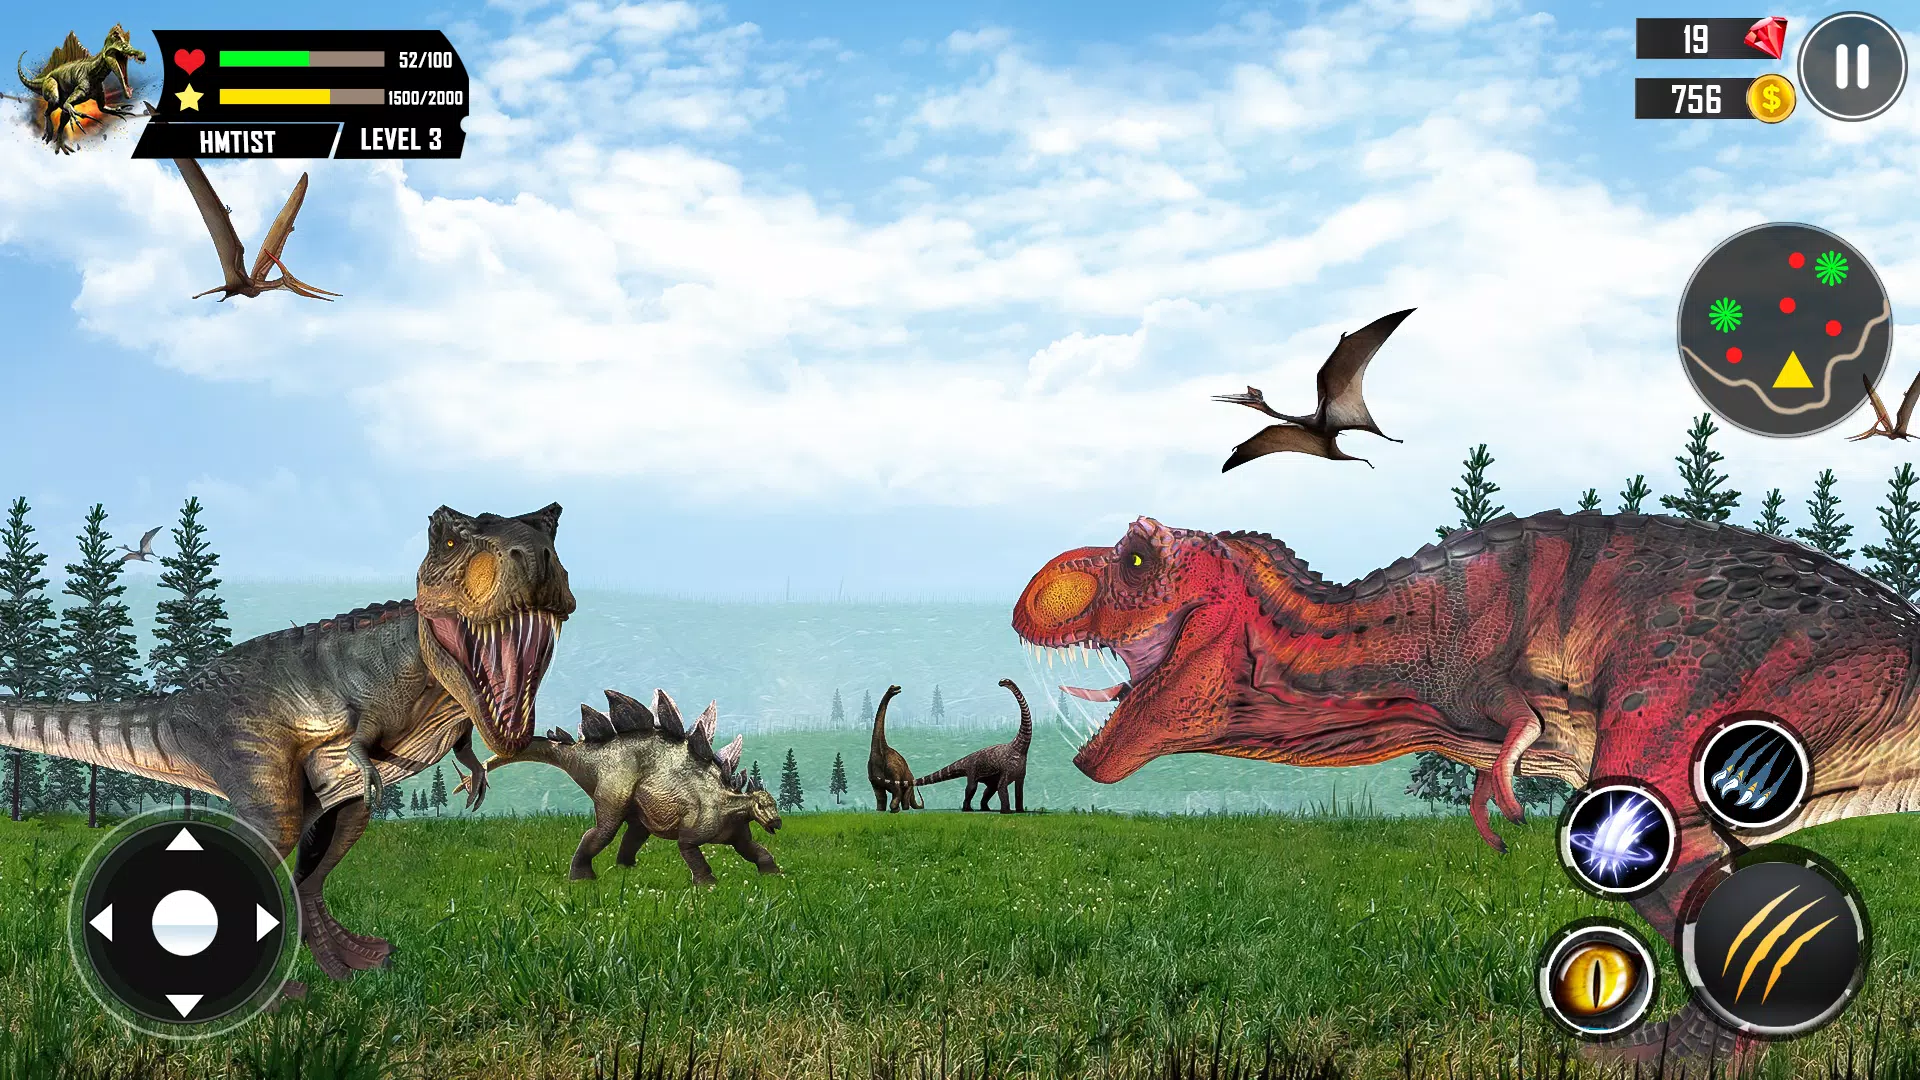 real dinossauro simulador 3d APK (Download Grátis) - Android Jogo